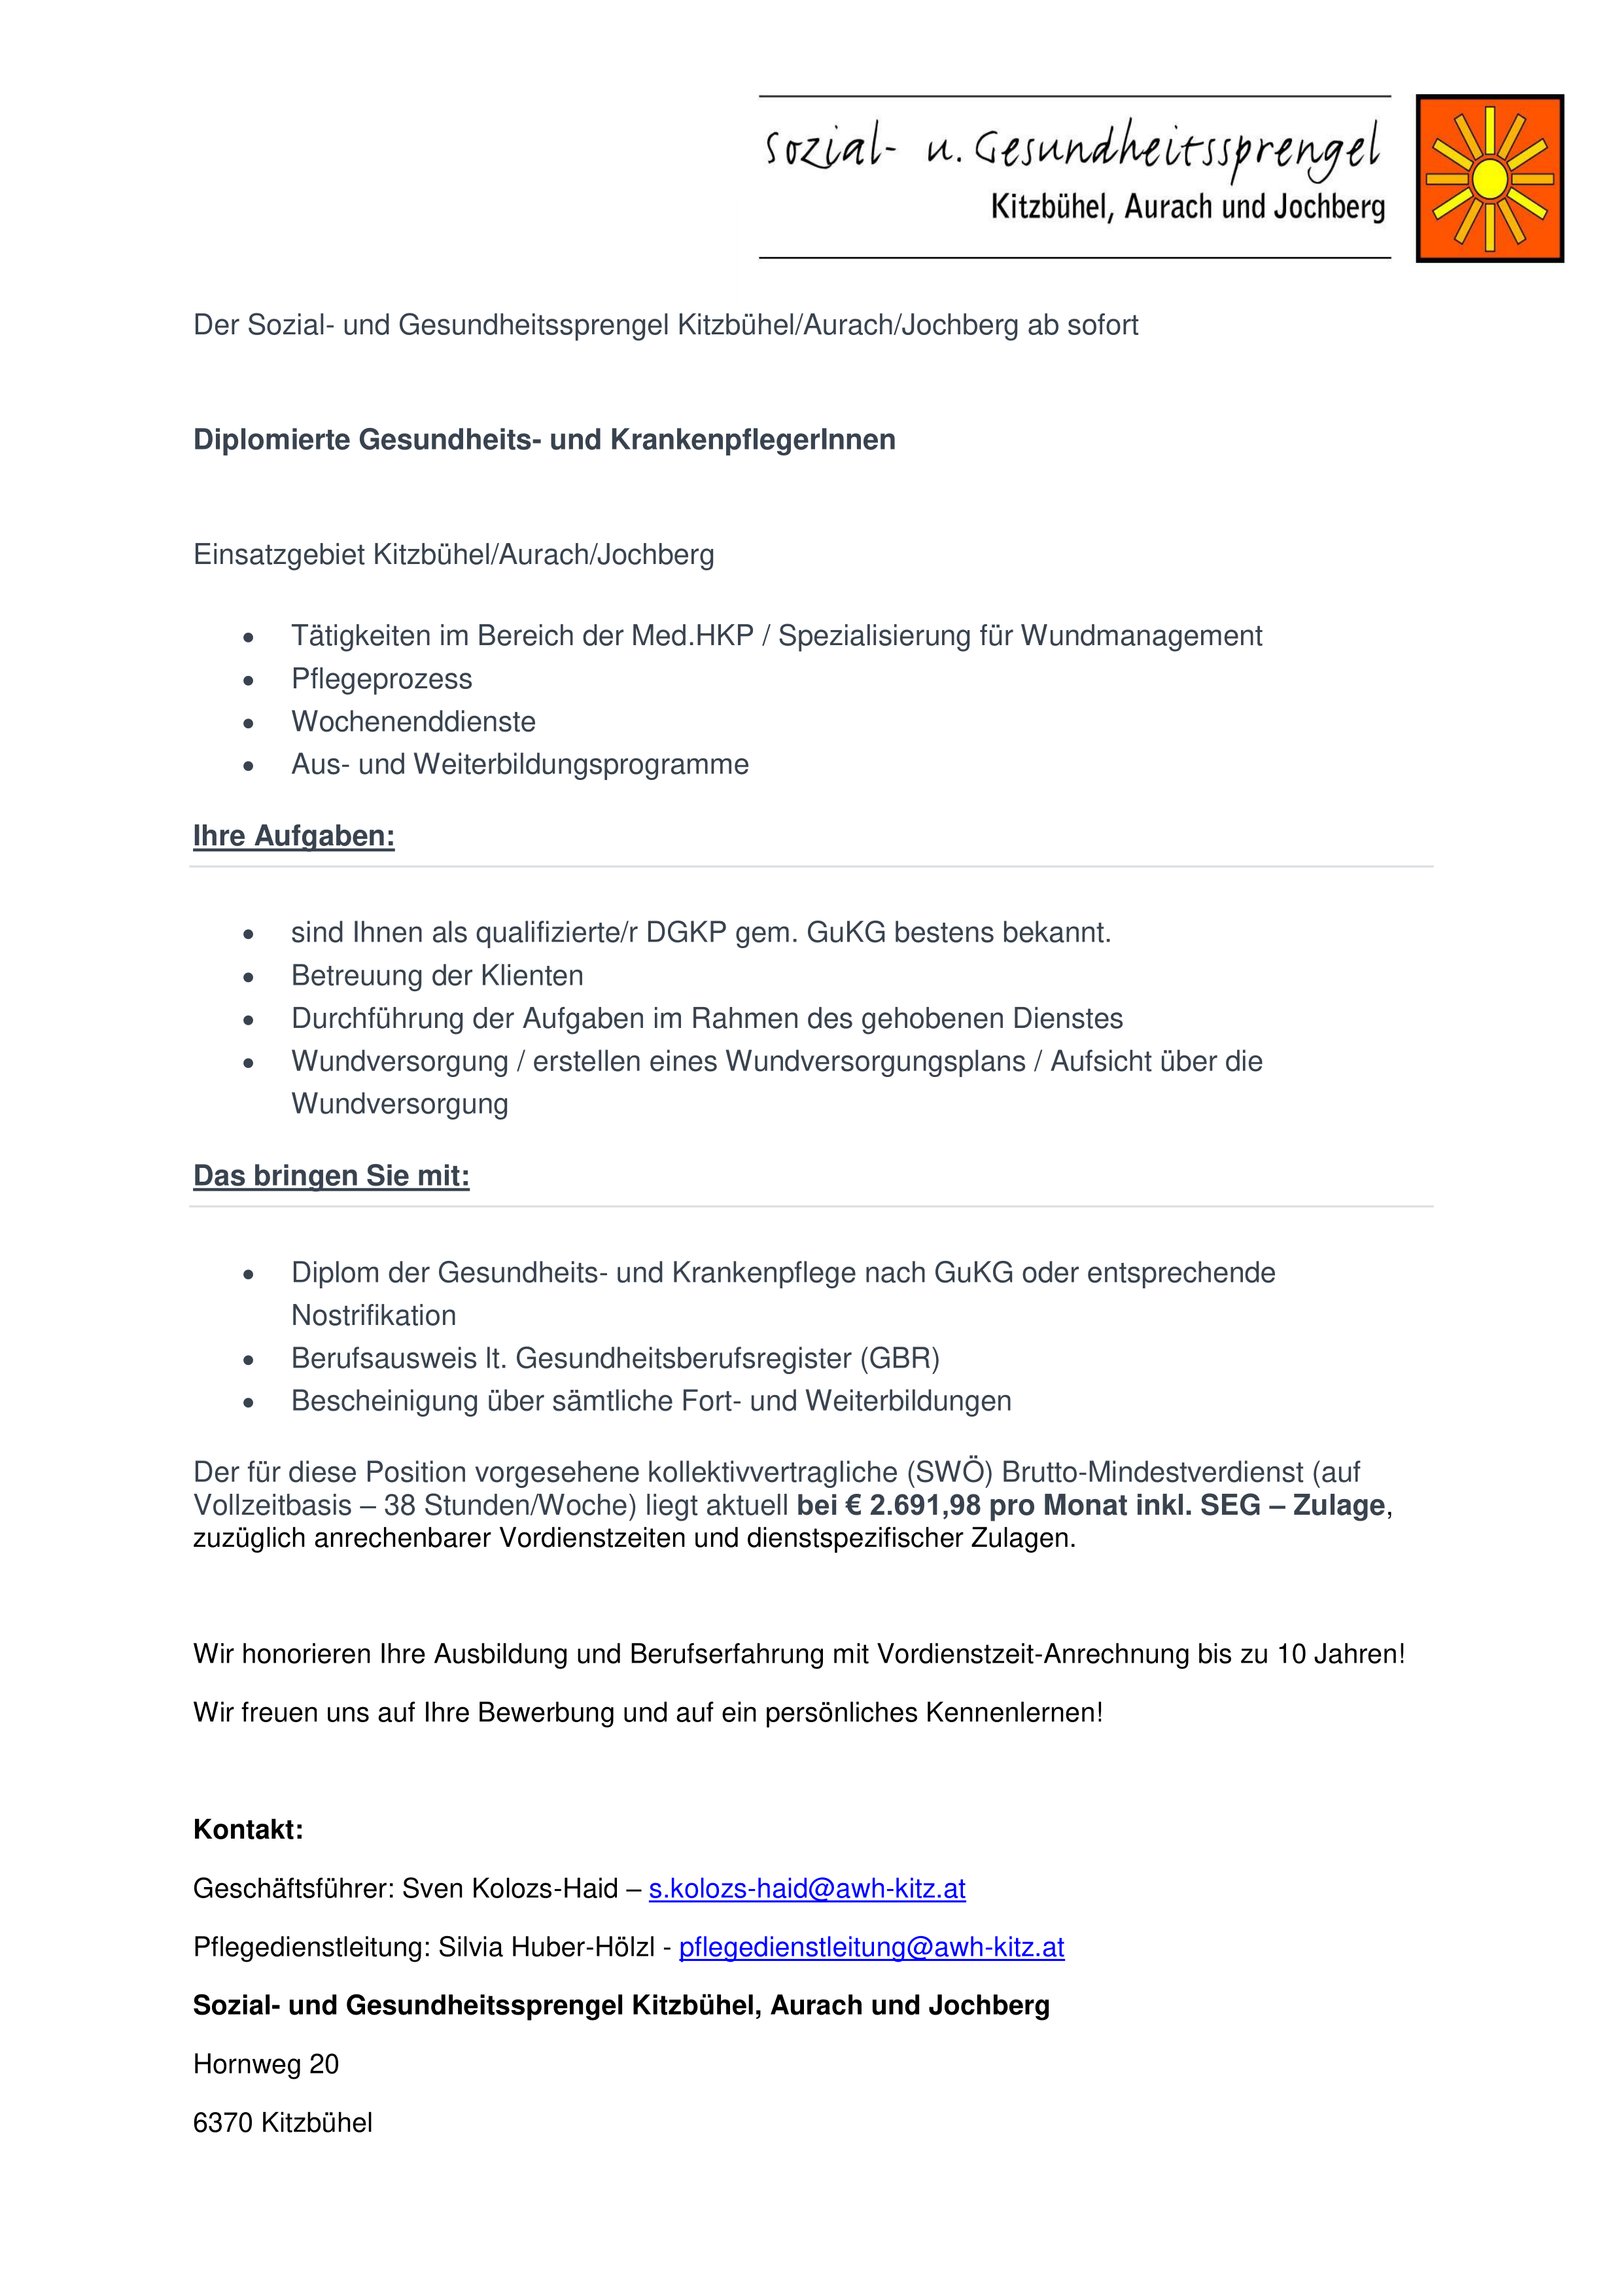 Der Sozial- und Gesundheitssprengel Kitzbühel/Aurach/Jochberg sucht ab sofort Diplomierte Gesundheits- und KrankenpflegerInnen